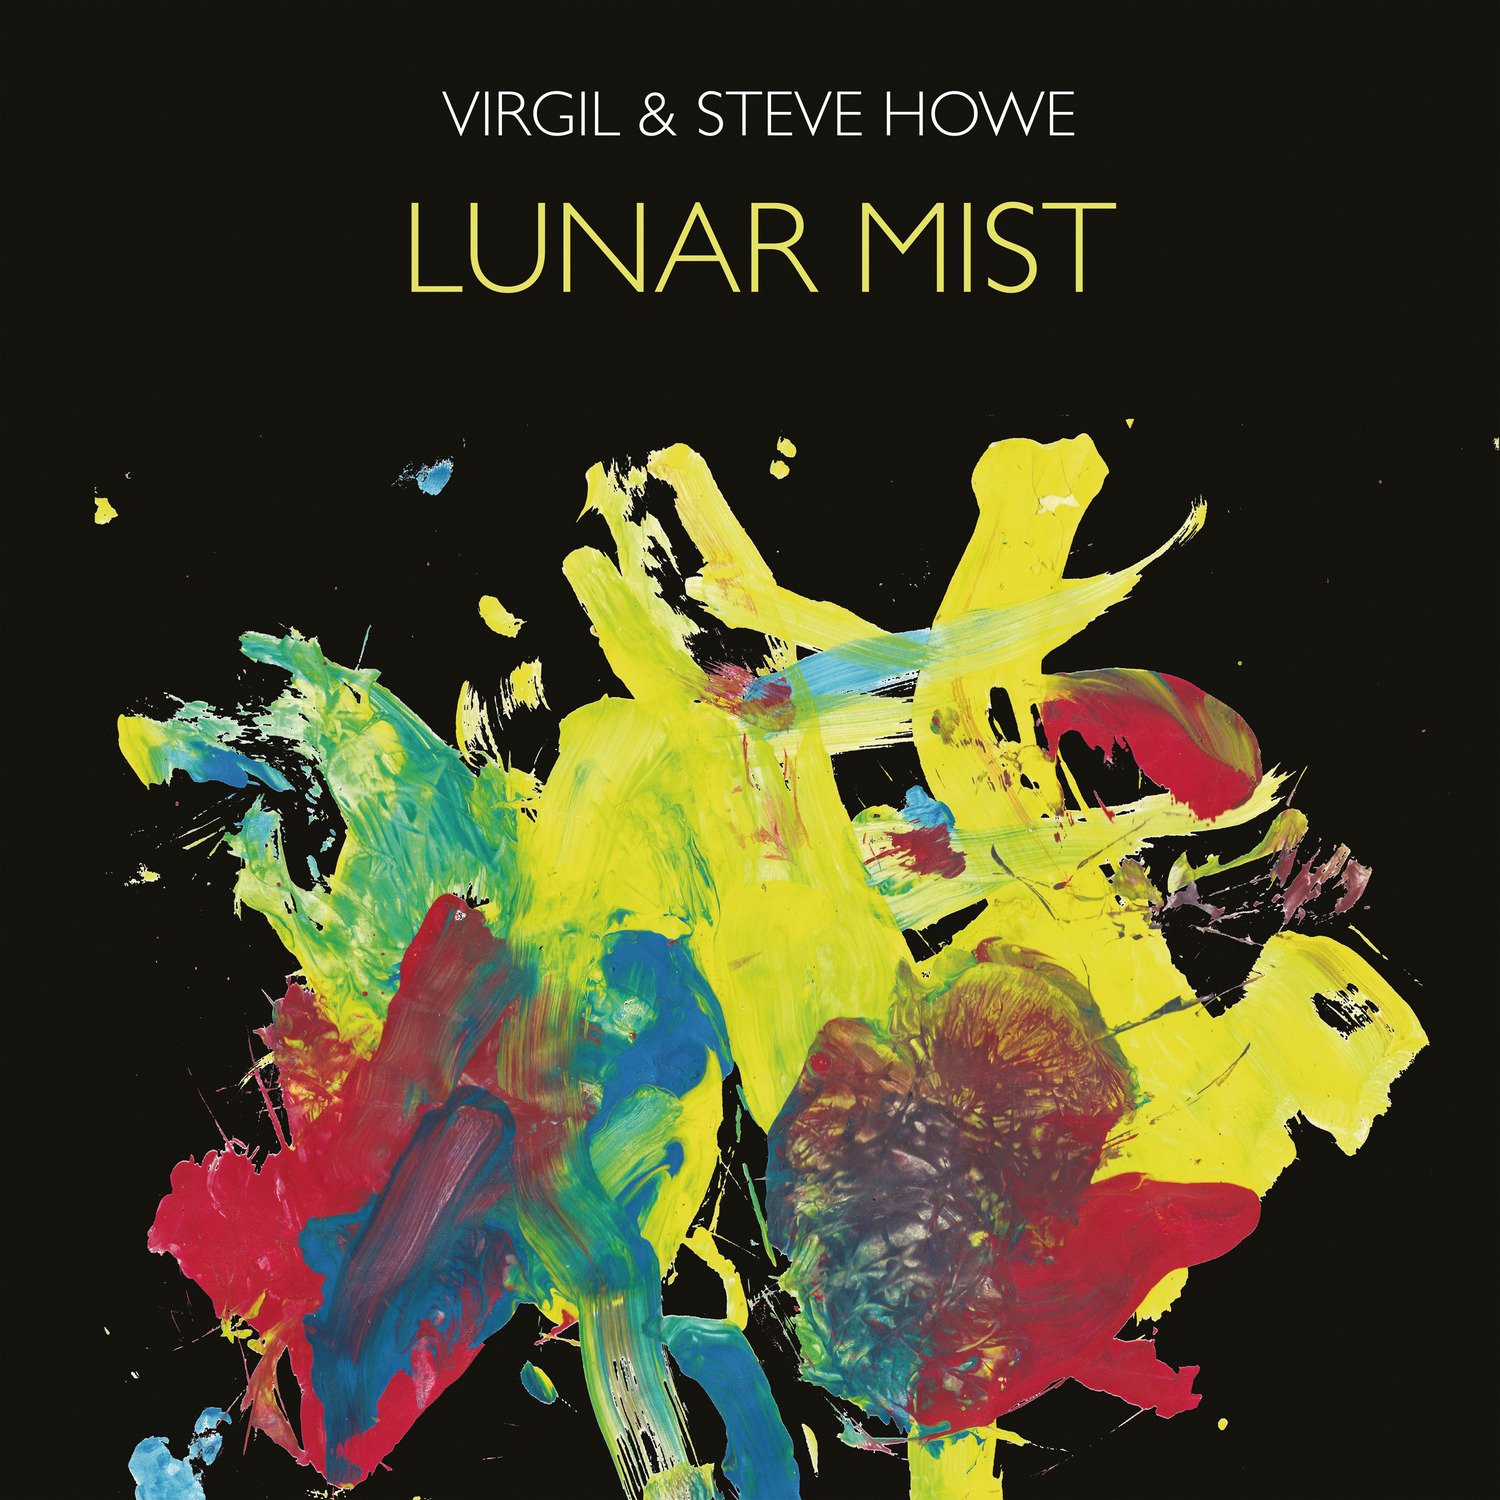 Virgil & Steve Howe - Lunar Mist, Vinyl